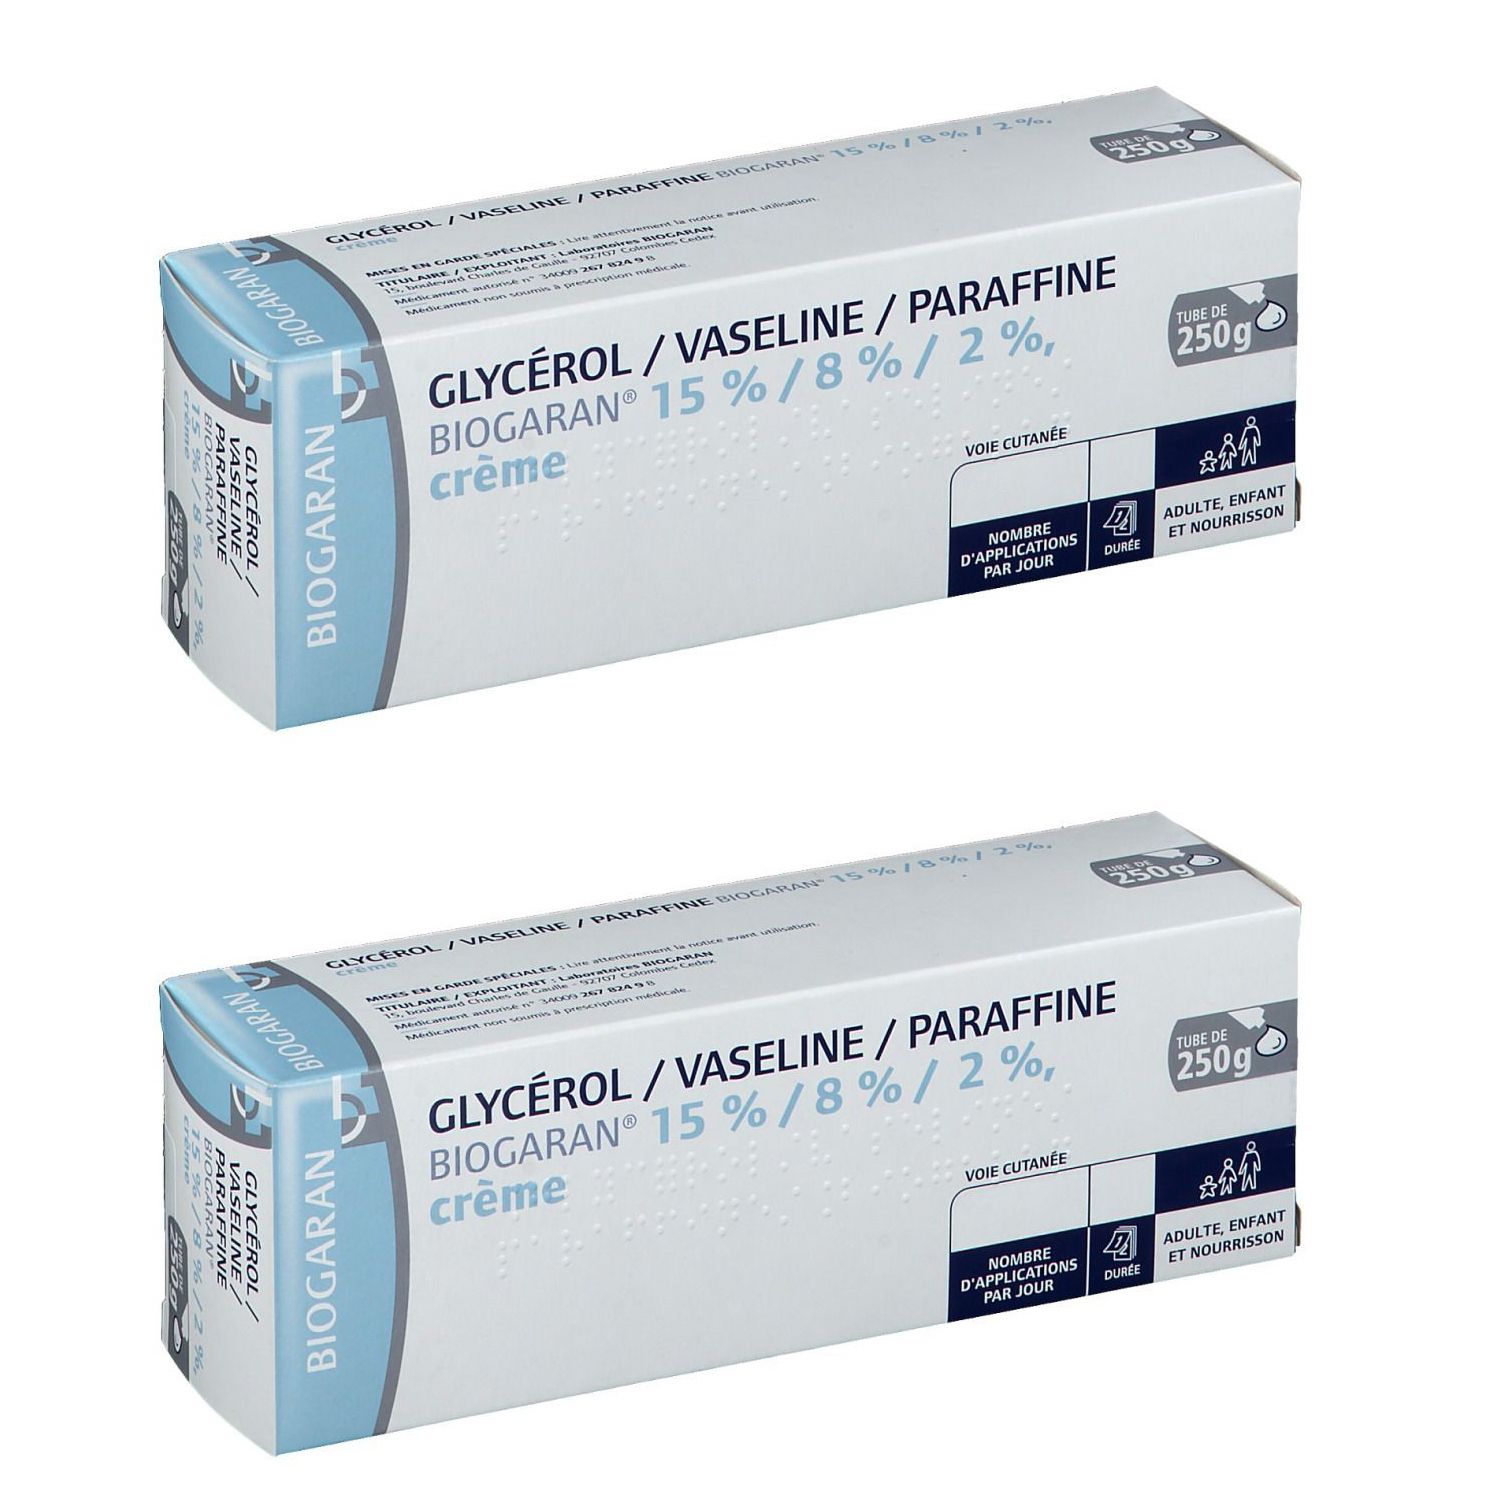 Biogaran® Glycérol/ Vaseline/ Paraffine 15% / 8% / 2% Crème